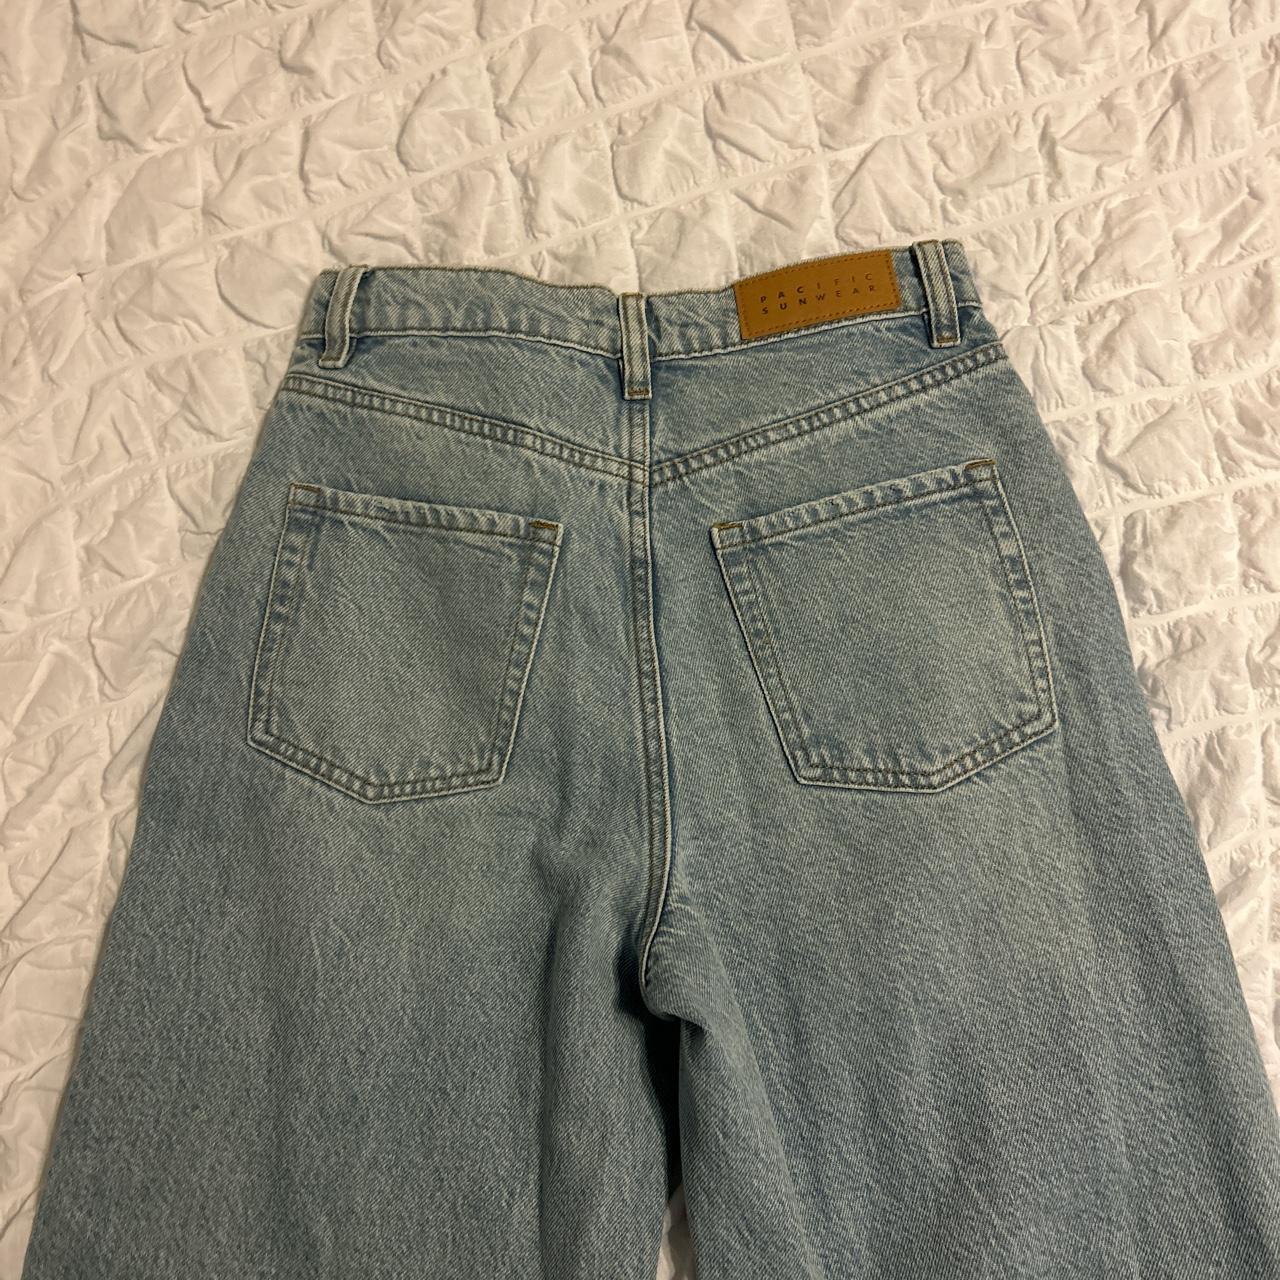 crop wide leg pacsun jeans size 25 def for the short... - Depop